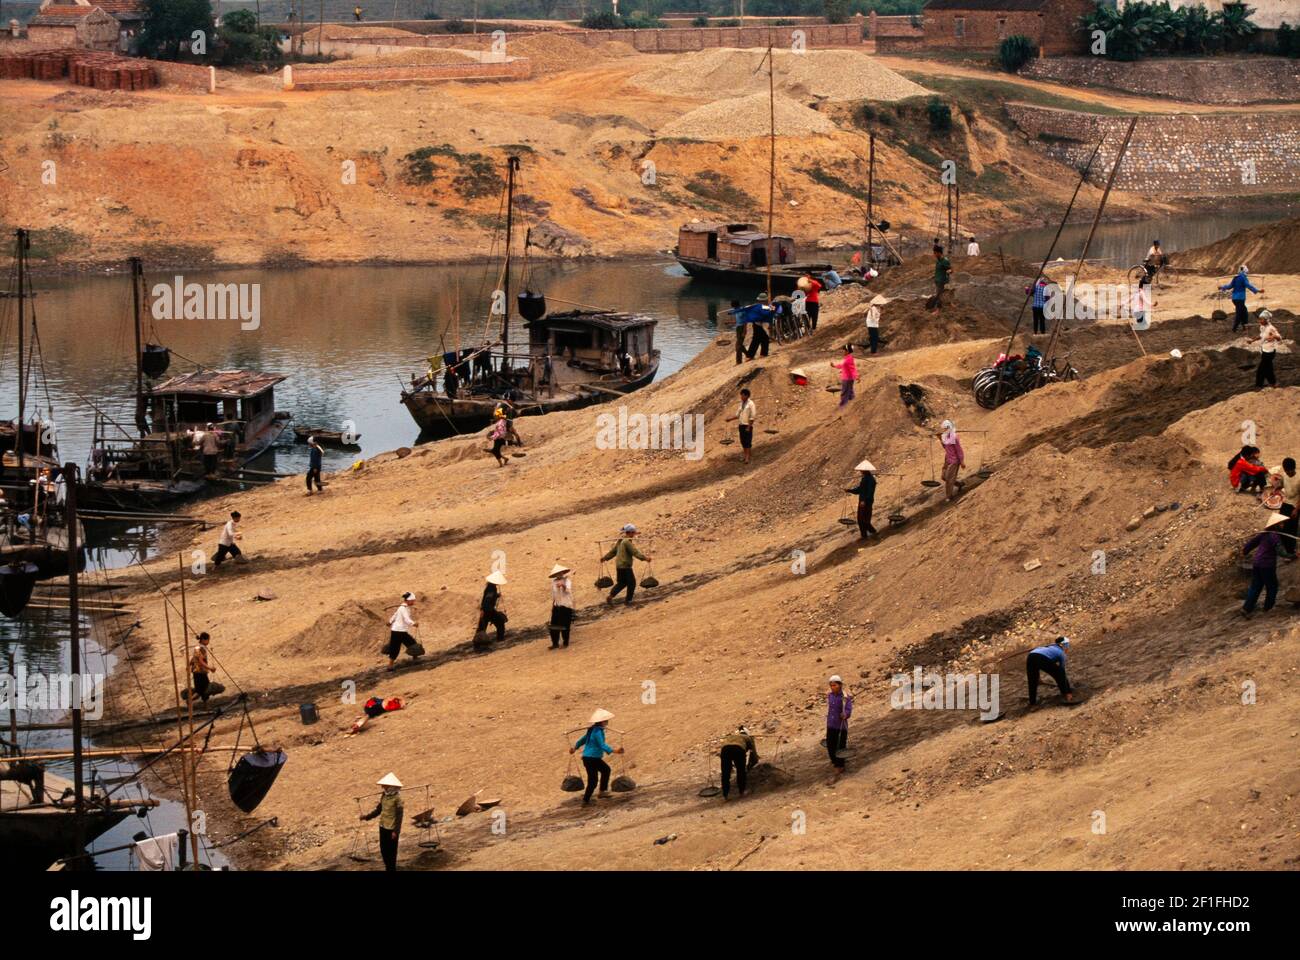 Lavoratori che trasportano materiali da costruzione da chiatte fluviali per una nuova costruzione sulla riva del fiume, rurale sud Vietnam, ottobre 1995 Foto Stock